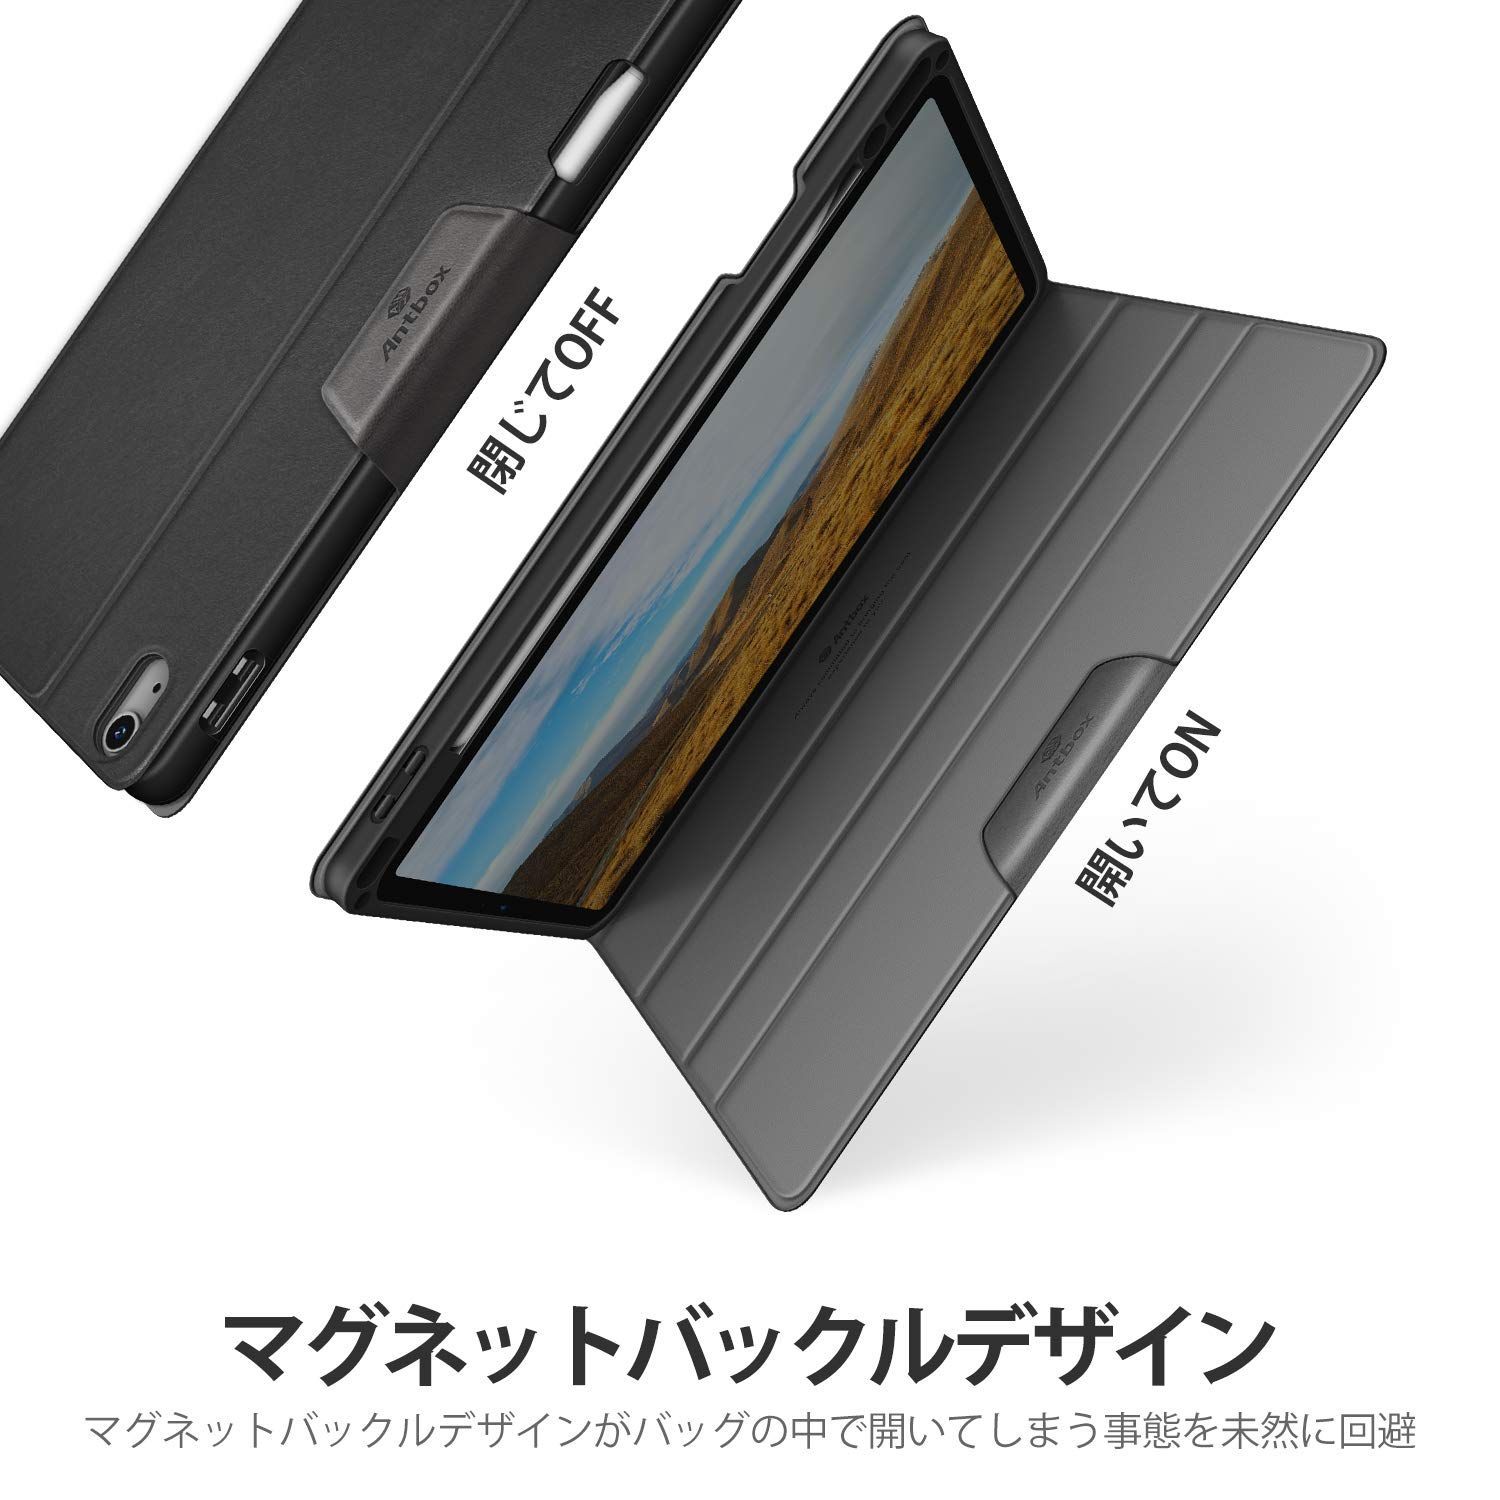 【色: ブラック】Antbox iPad Air 5/4 ケース オートスリープ